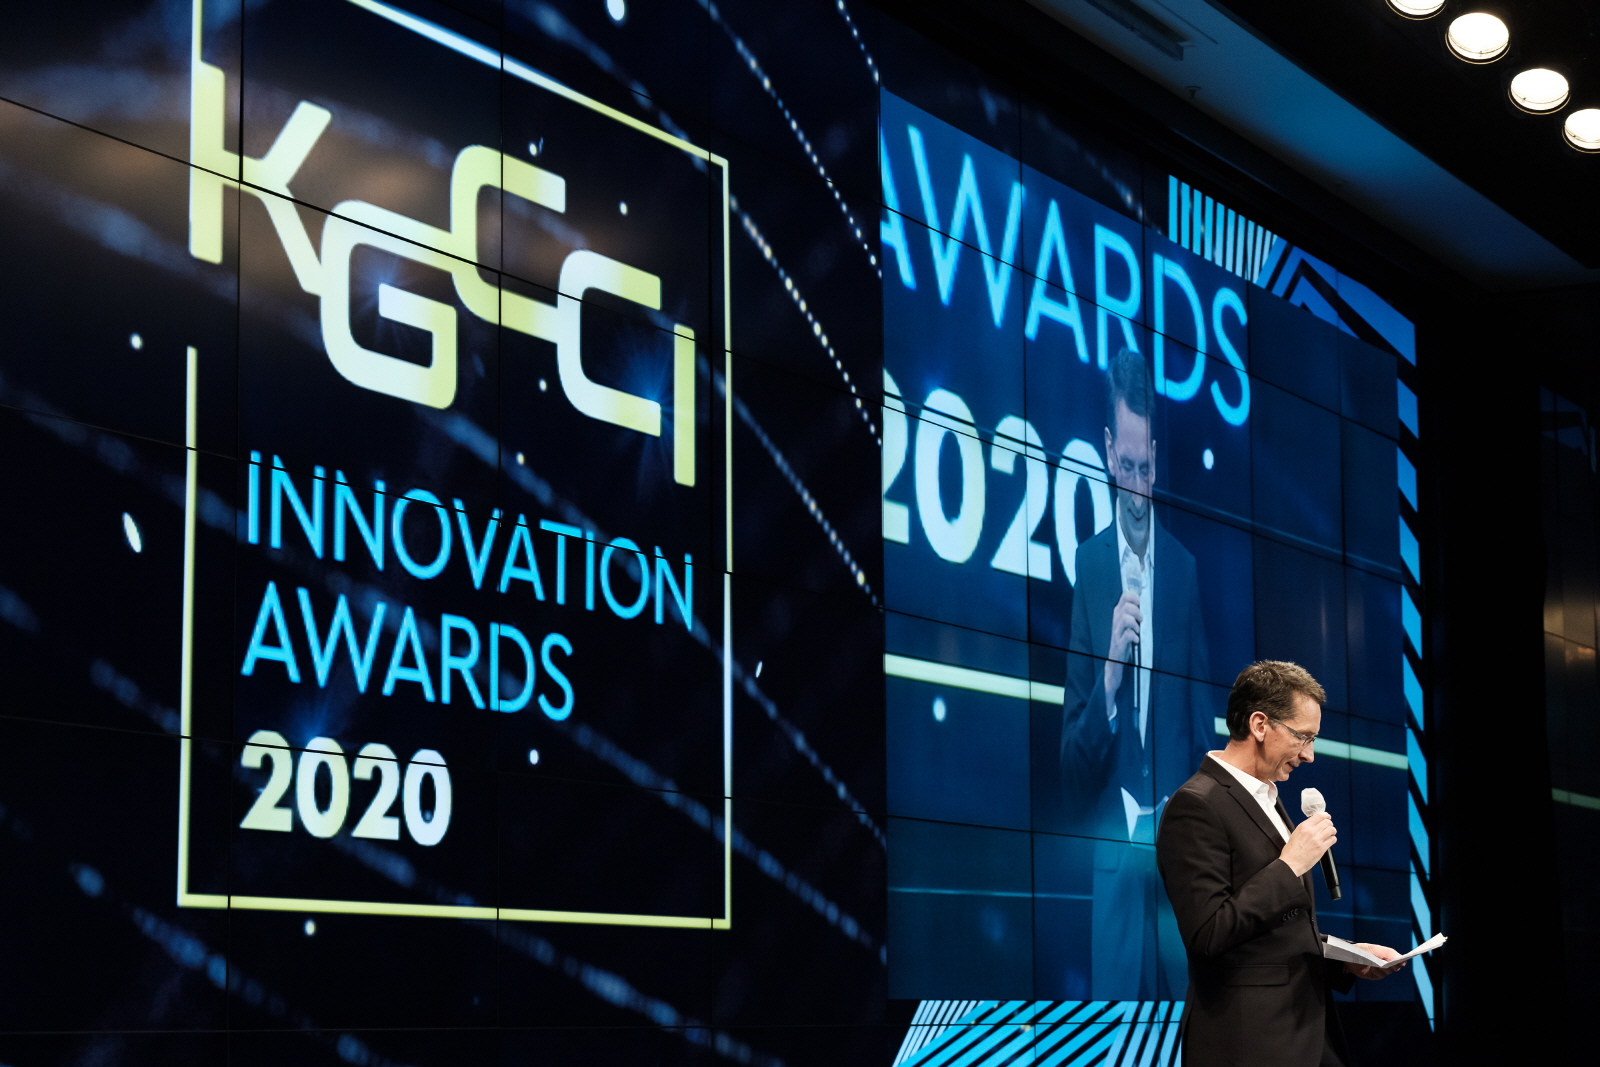 KGCCI INNOVATION AWARDS 2020